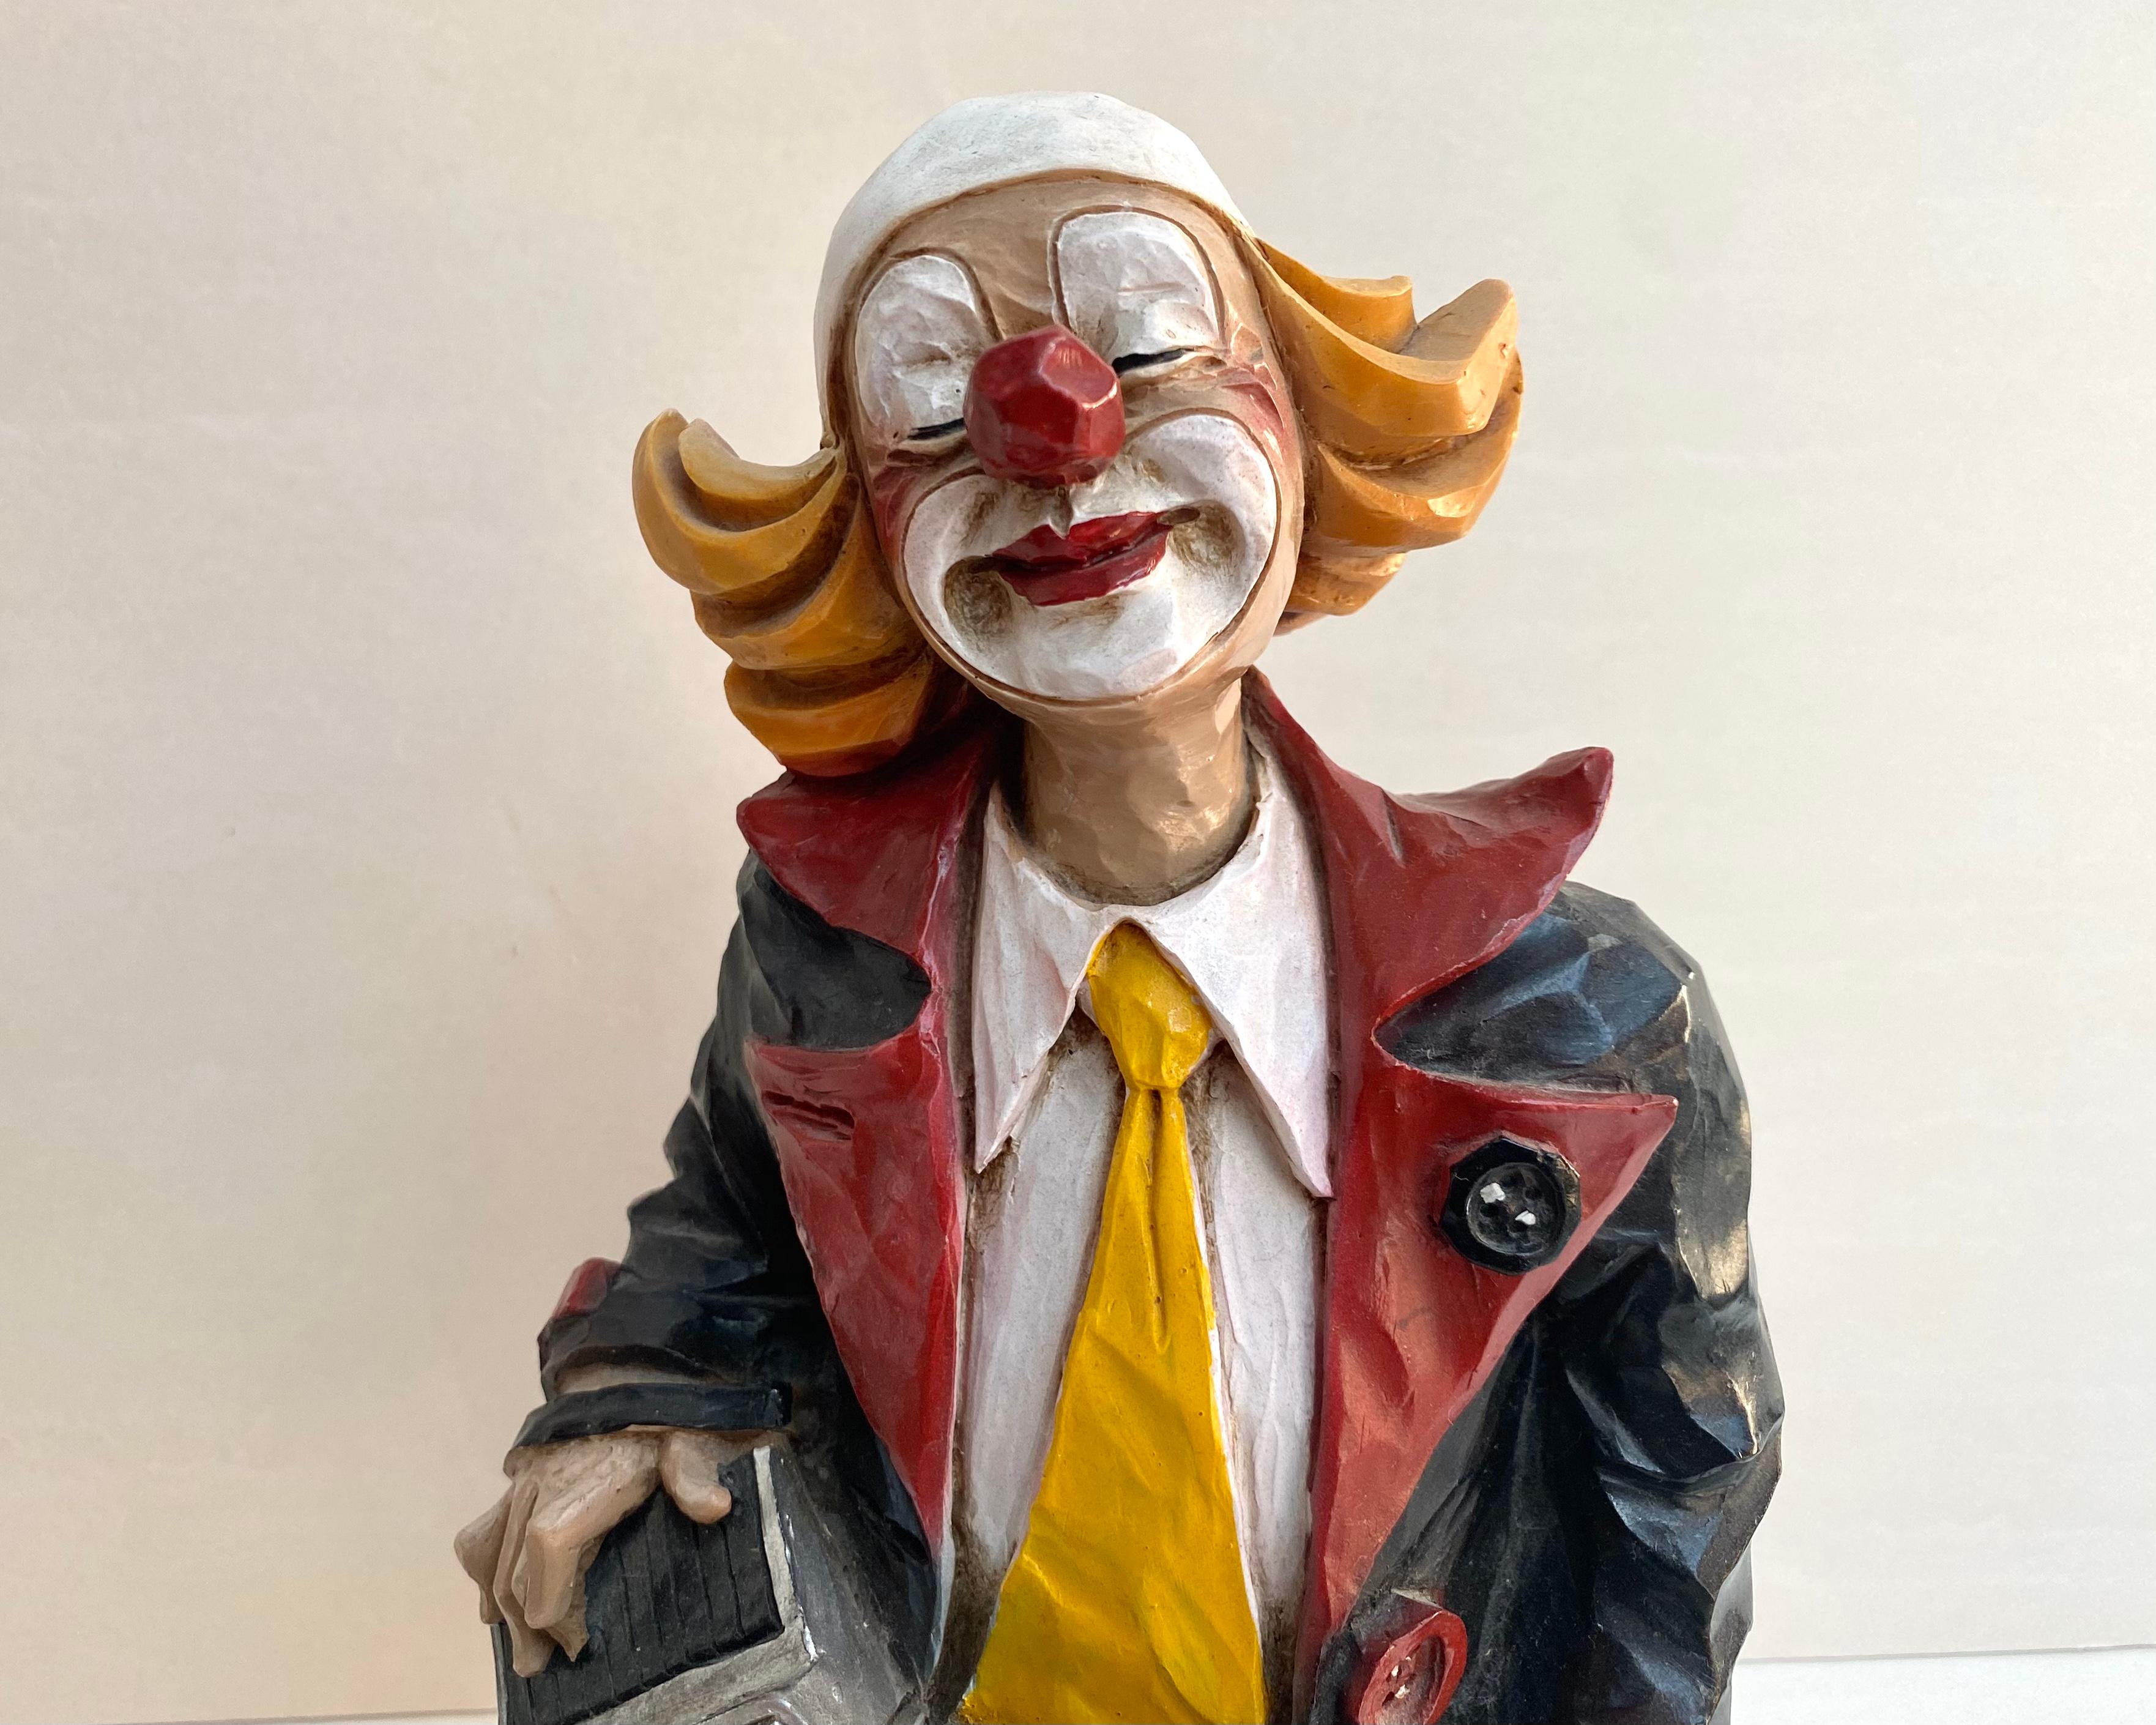 clown ceramic figurines